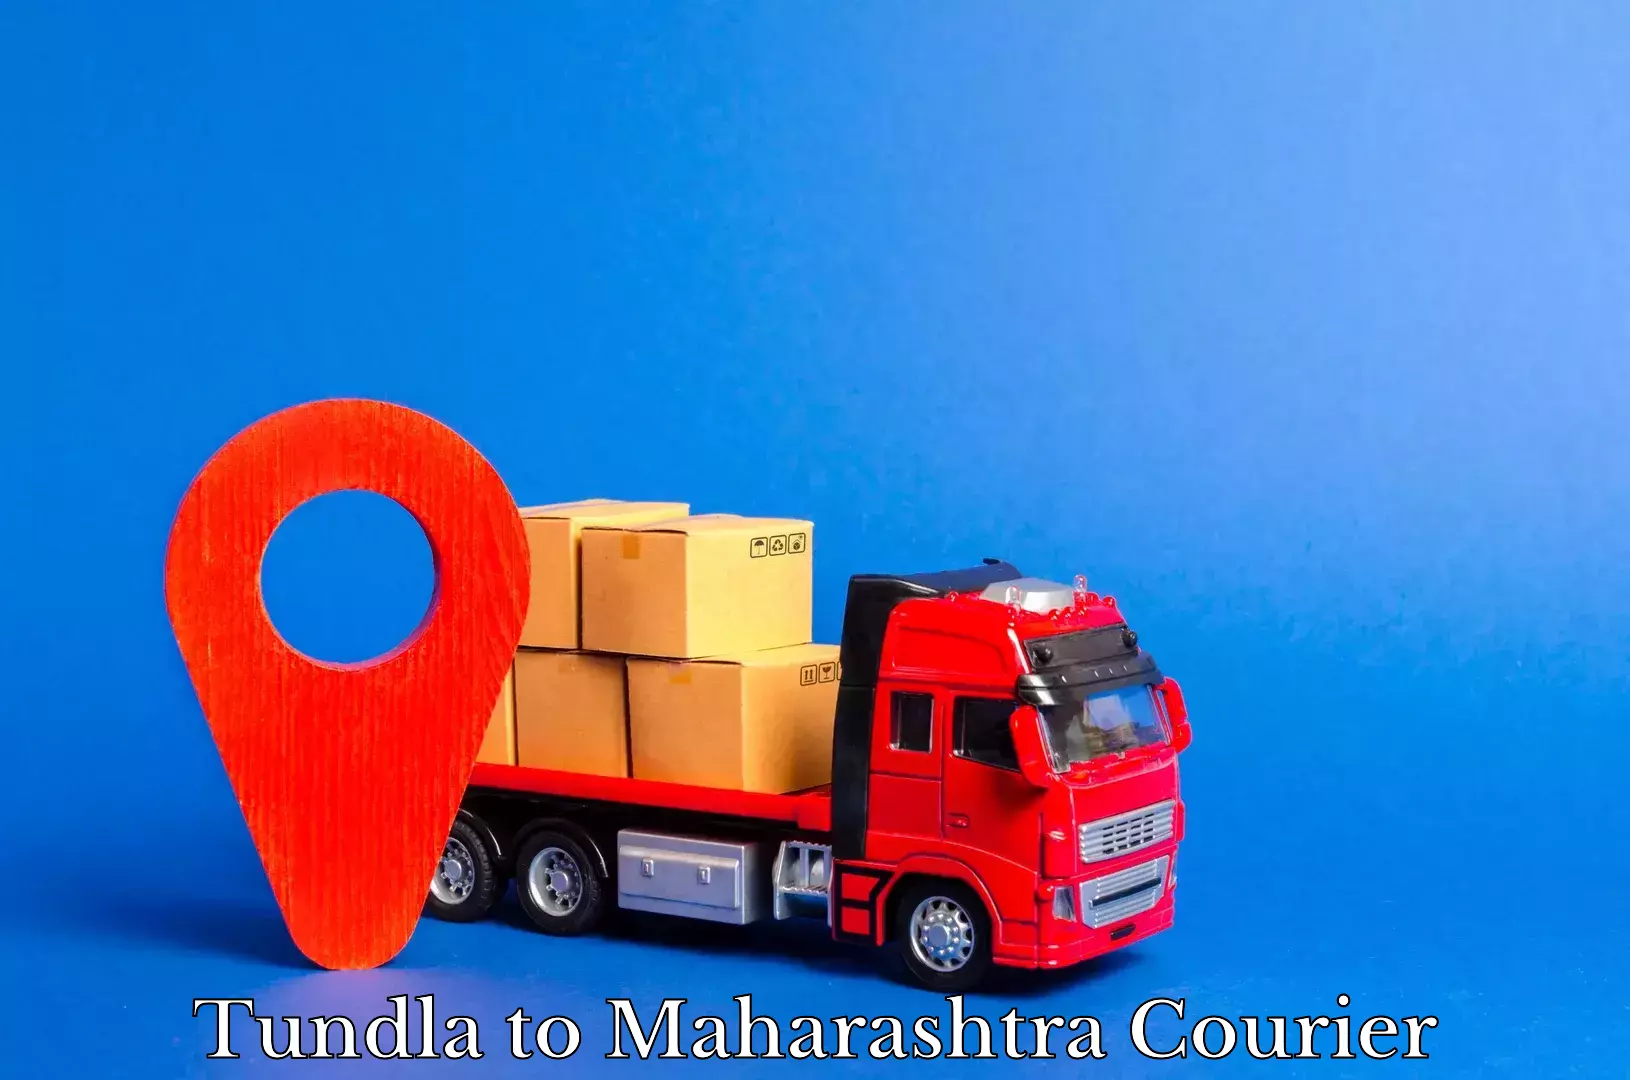 Courier service innovation Tundla to Maharashtra